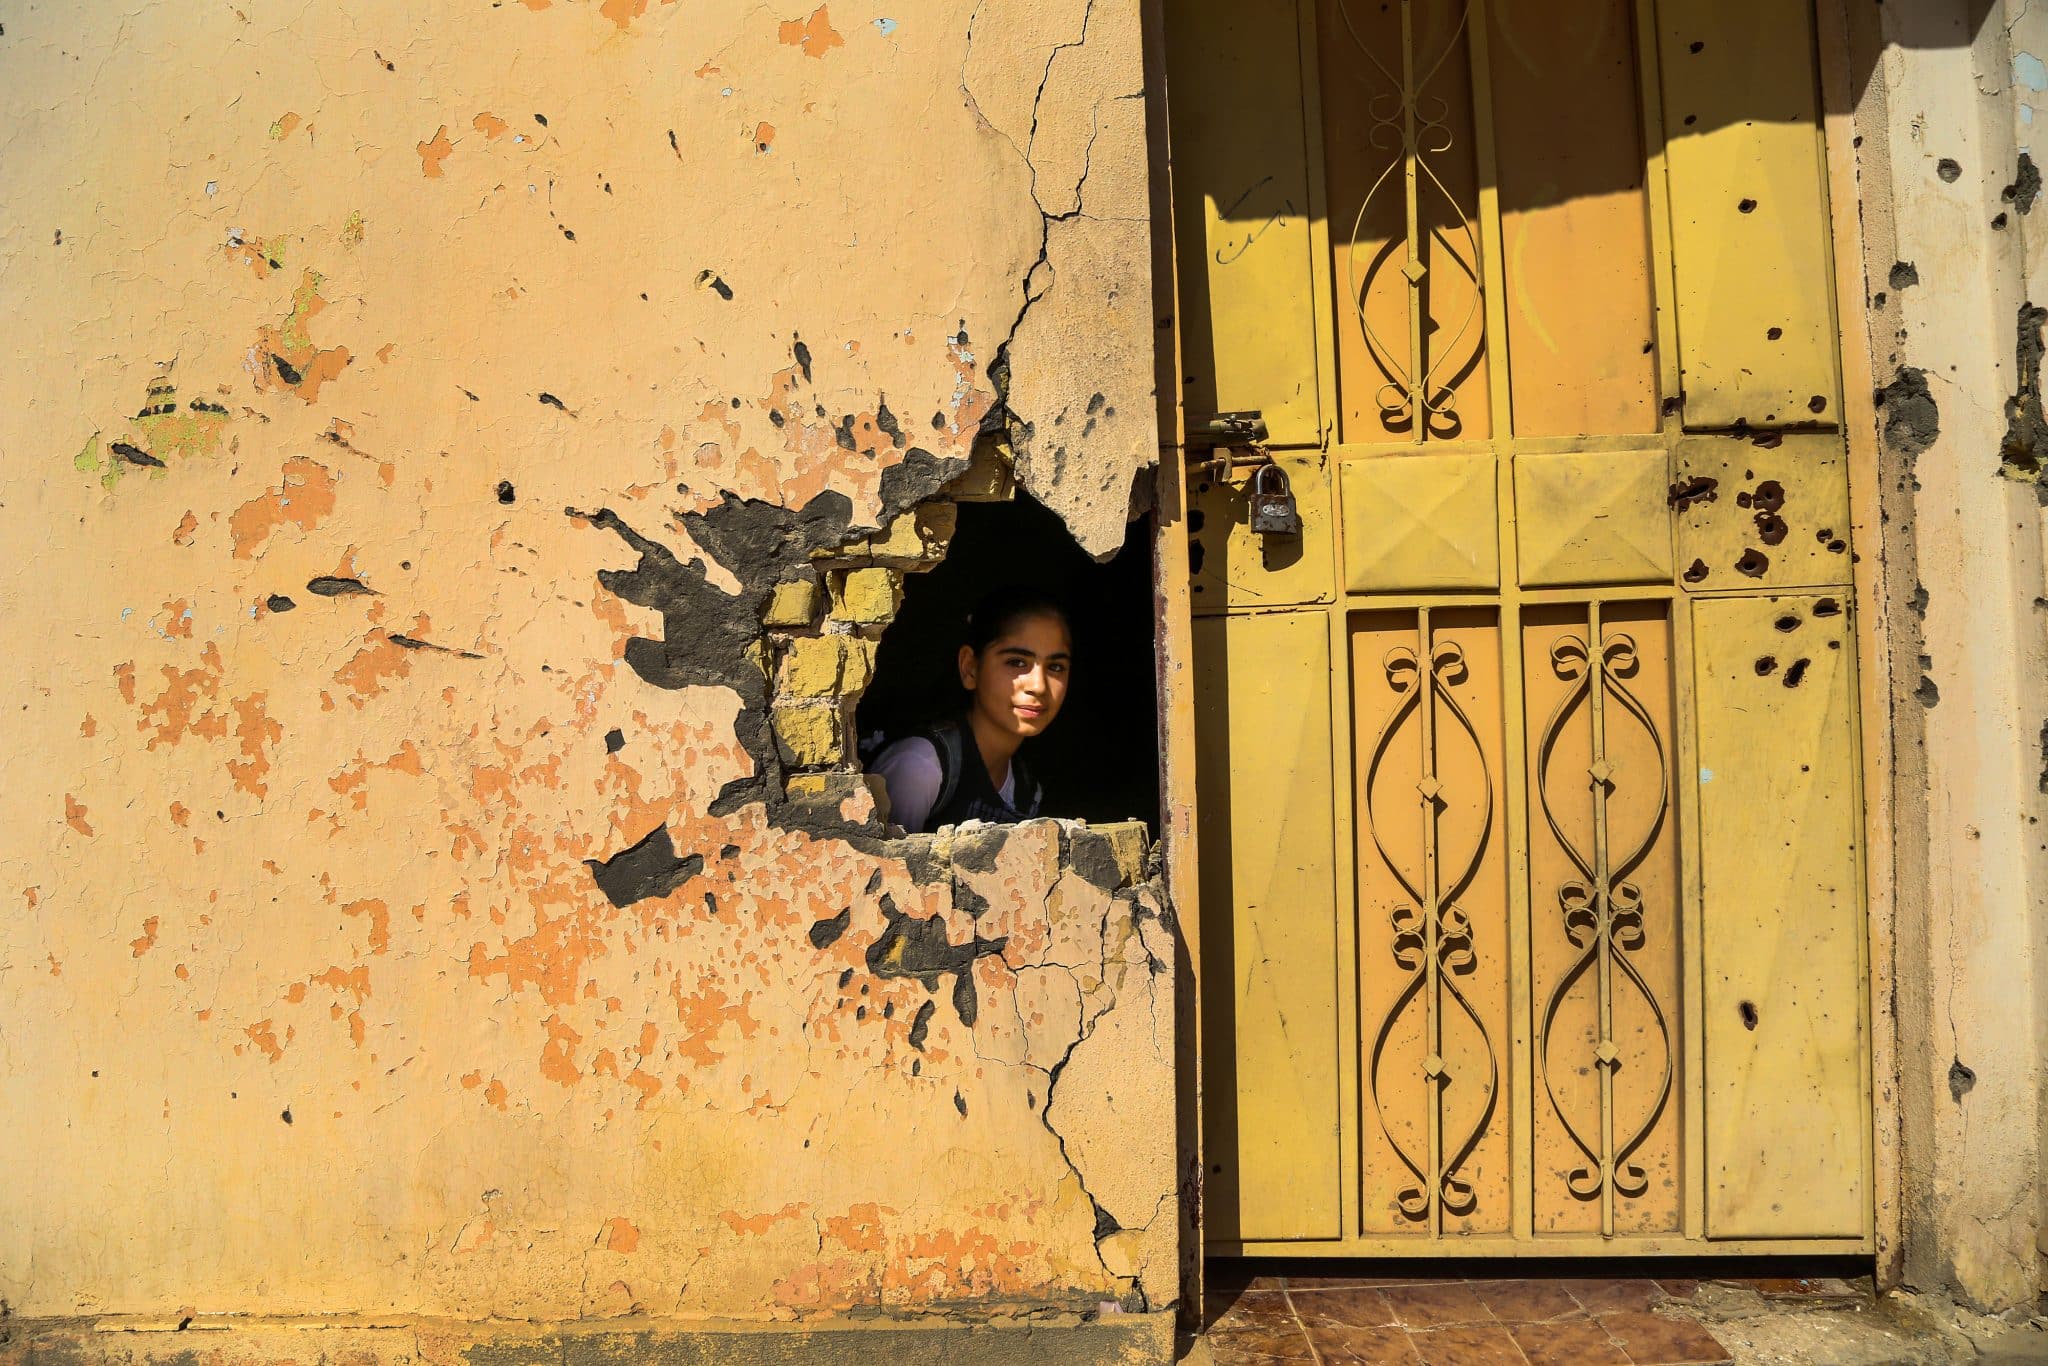 Le 1er novembre 2016, une jeune fille regarde à travers un trou dans le mur causé par les dégâts du conflit dans une école de Ramadi, dans le gouvernorat d'Anbar, en Irak. L'UNICEF travaille actuellement à la réhabilitation de 100 écoles dans l'Anbar. 3,5 millions d'enfants irakiens en âge d'être scolarisés n'ont pas accès à l'éducation, ce qui signifie qu'ils courent un risque accru de mariage précoce, de travail des enfants et d'enrôlement dans des groupes armés. Une école sur cinq n'est pas utilisée en raison du conflit. © UNICEF/UN038011/Khuzaie